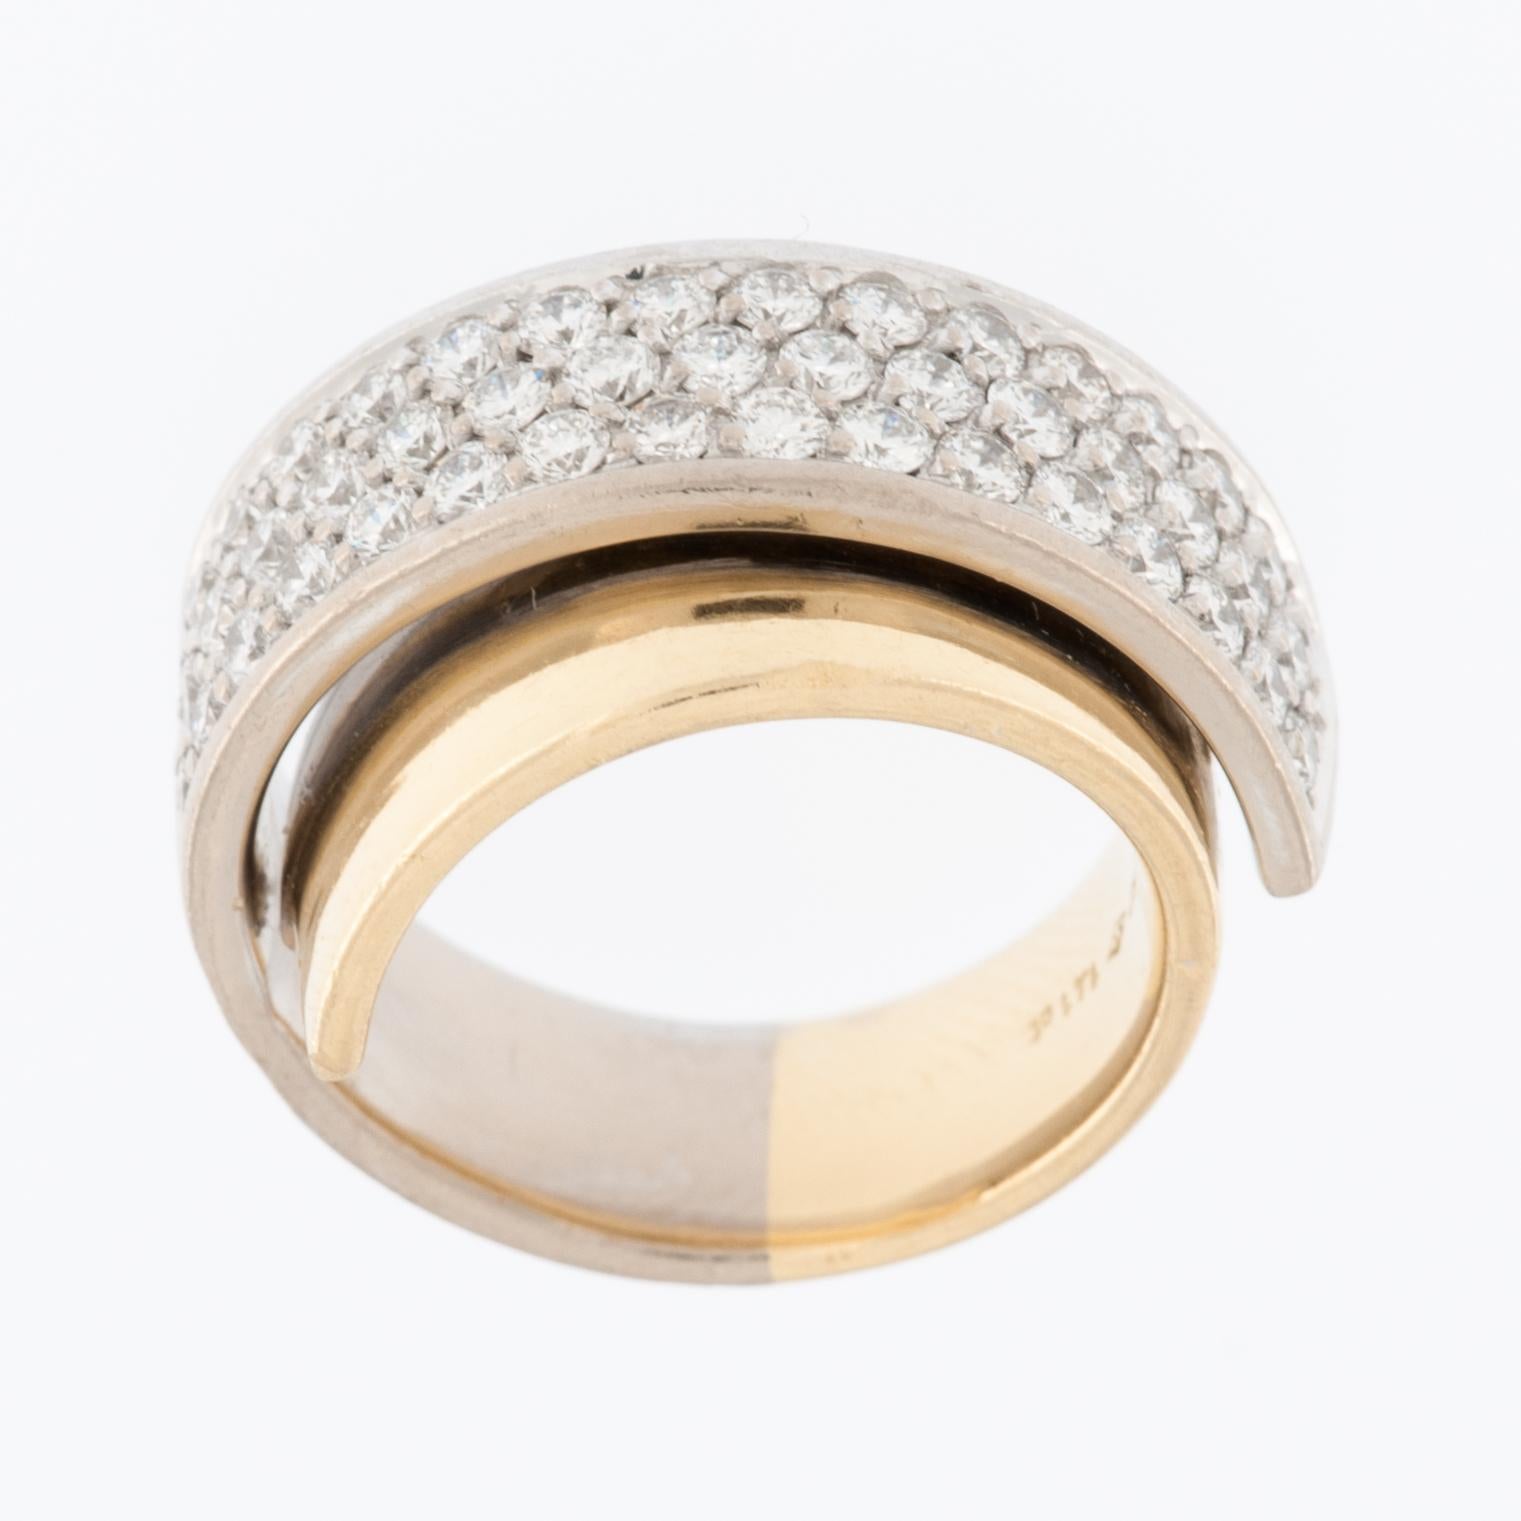 La bague Millennial Diamond en or jaune et blanc 18Kt avec sertissage de perles est un bijou étonnant et contemporain conçu pour plaire à la génération moderne. La bague est fabriquée en or jaune et blanc 18 carats (18Kt) de haute qualité. Ce choix